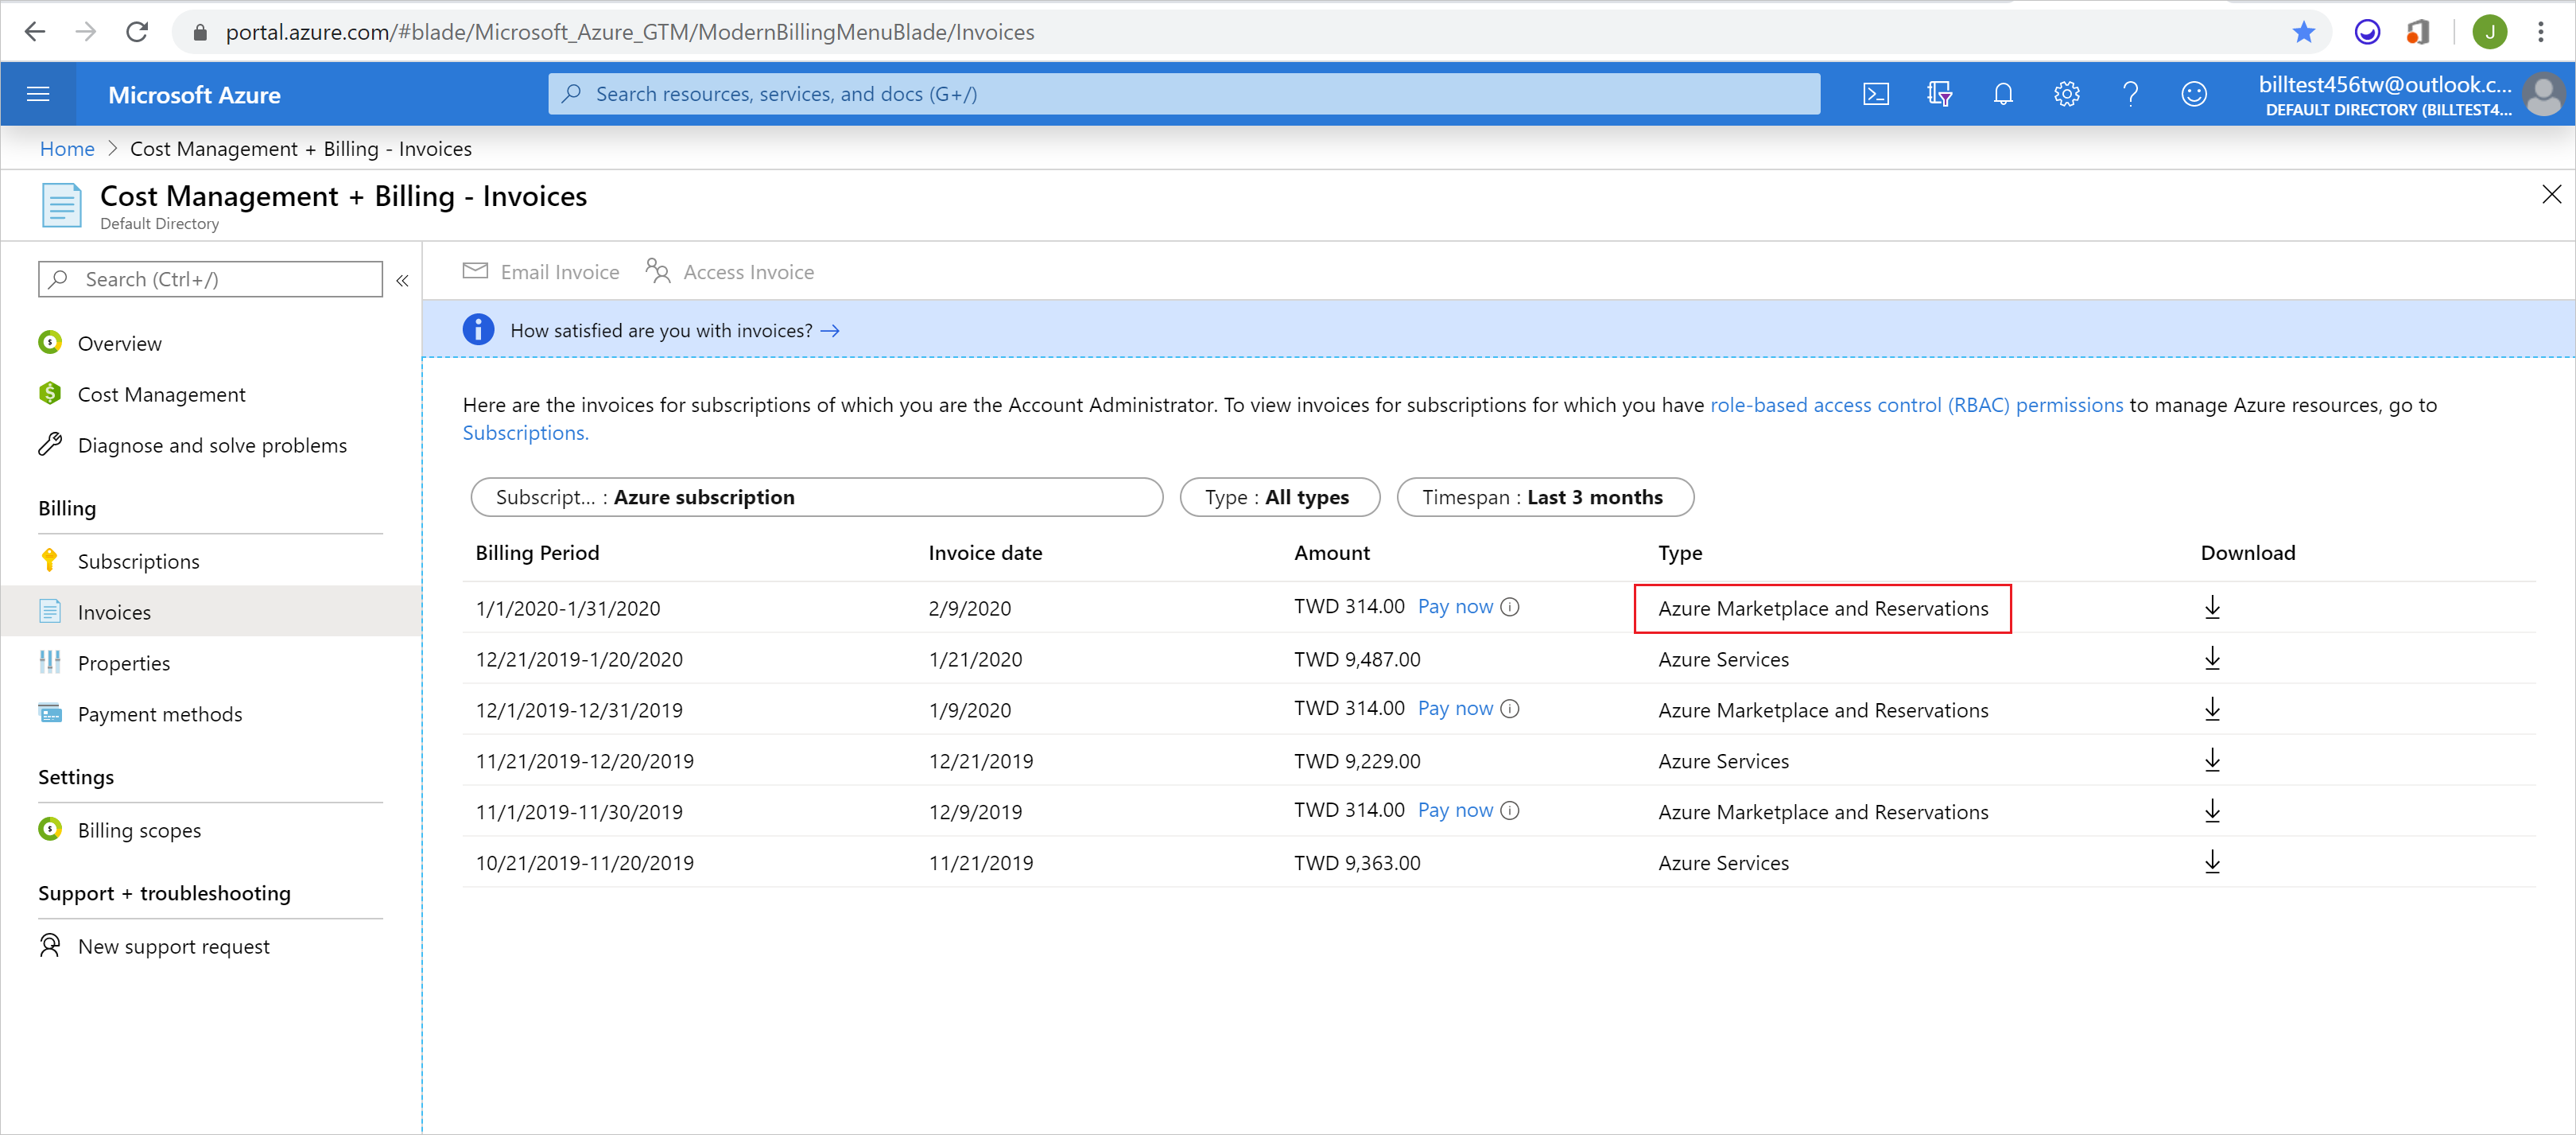 Captura de tela mostrando as faturas de cobrança com o Azure Marketplace e Reservas em destaque.